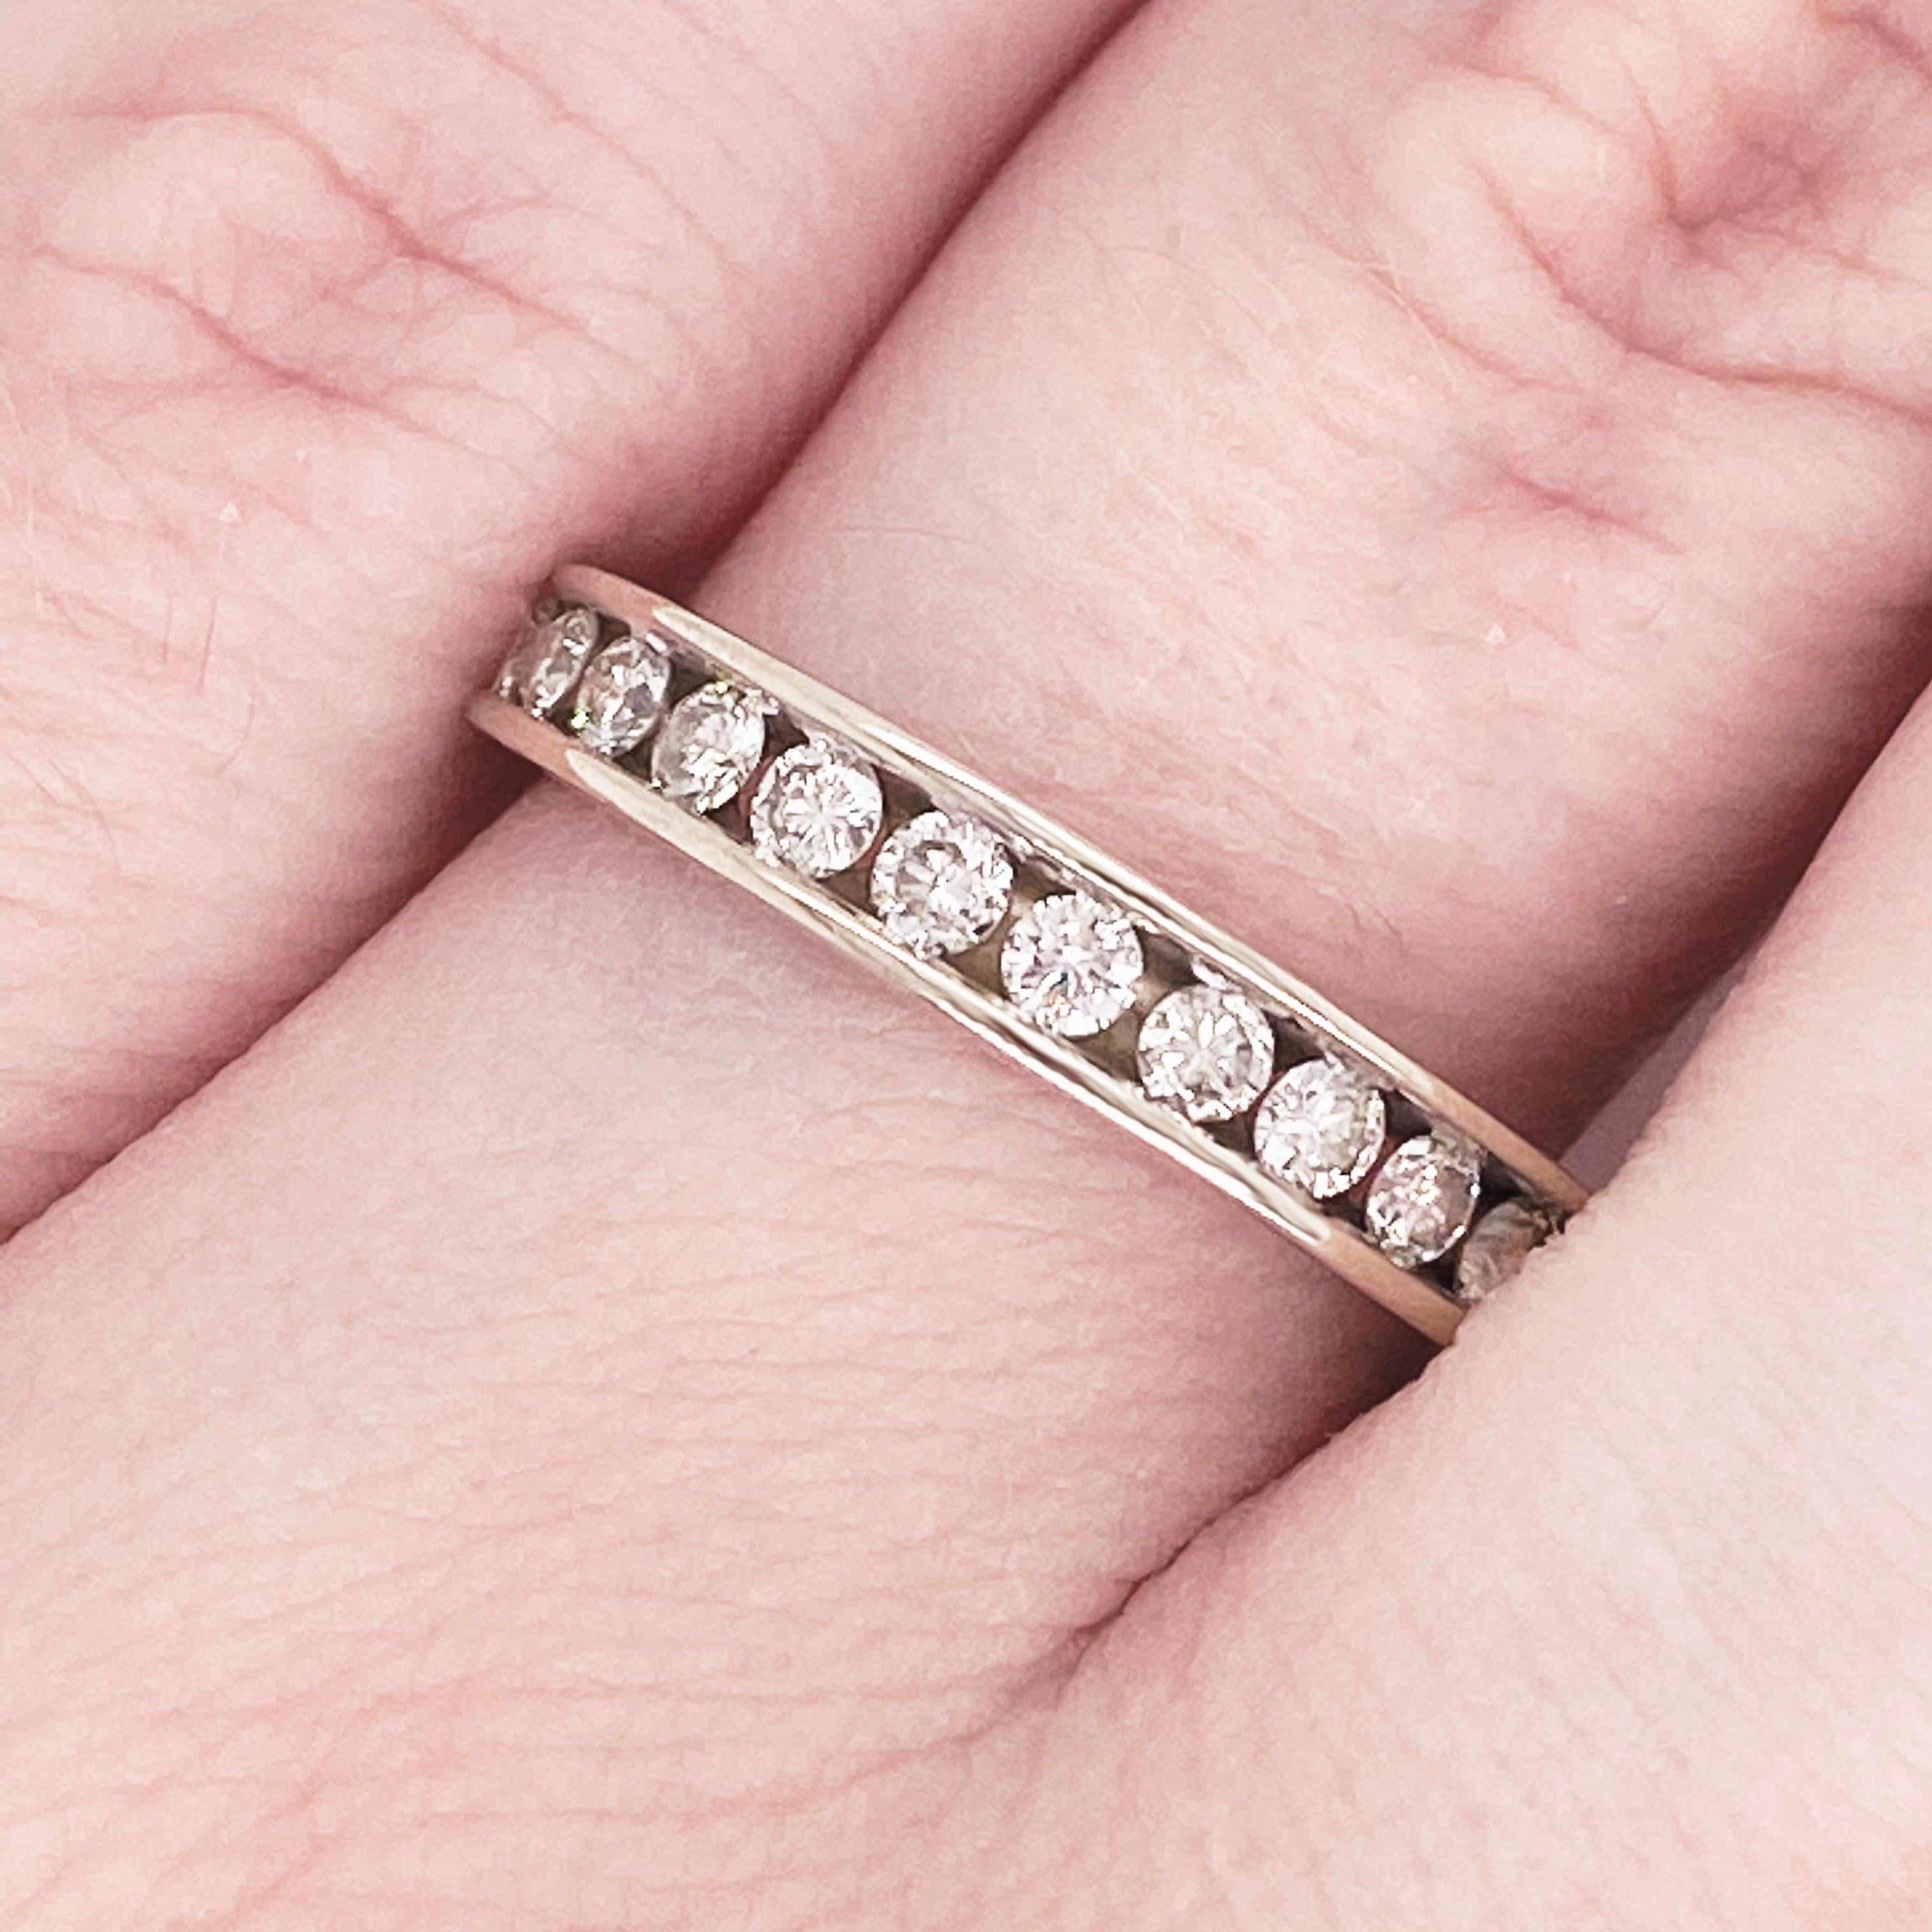 Ce magnifique bracelet en or blanc poli, parsemé de diamants ronds, offre un look très classique et moderne à la fois ! Cette bague est très à la mode et peut ajouter une touche de style à n'importe quelle tenue, tout en étant très classe et en